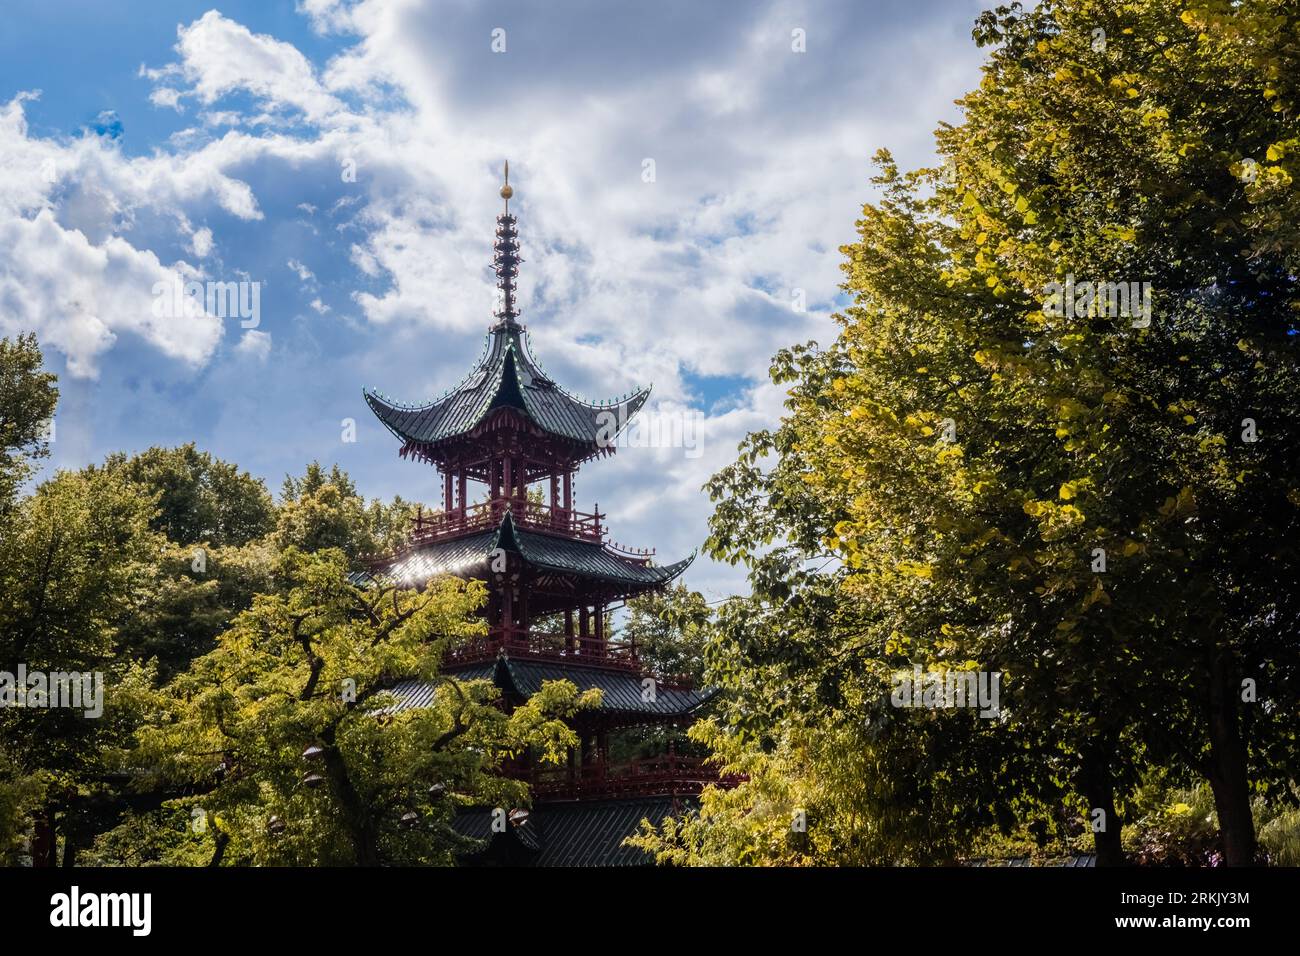 Ein schlanker Turm mit traditioneller chinesischer Architektur inmitten von Bäumen in einem Wald. Stockfoto